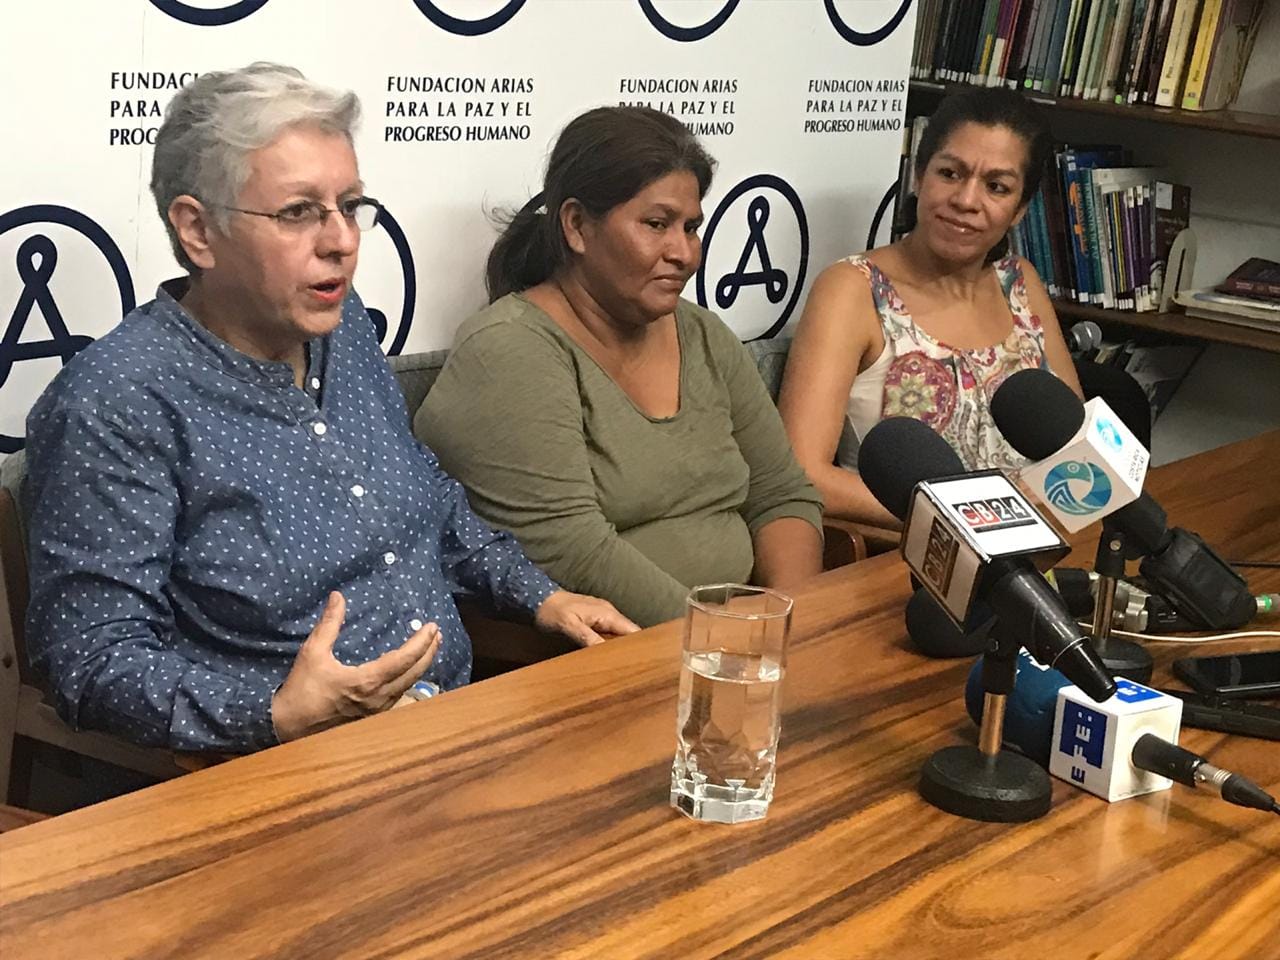 Junto a la activista feminista Ana Quirós, estuvo la líder campesina Francisca Ramírez, exiliada en ese país desde hace varios meses. Foto: Cortesía